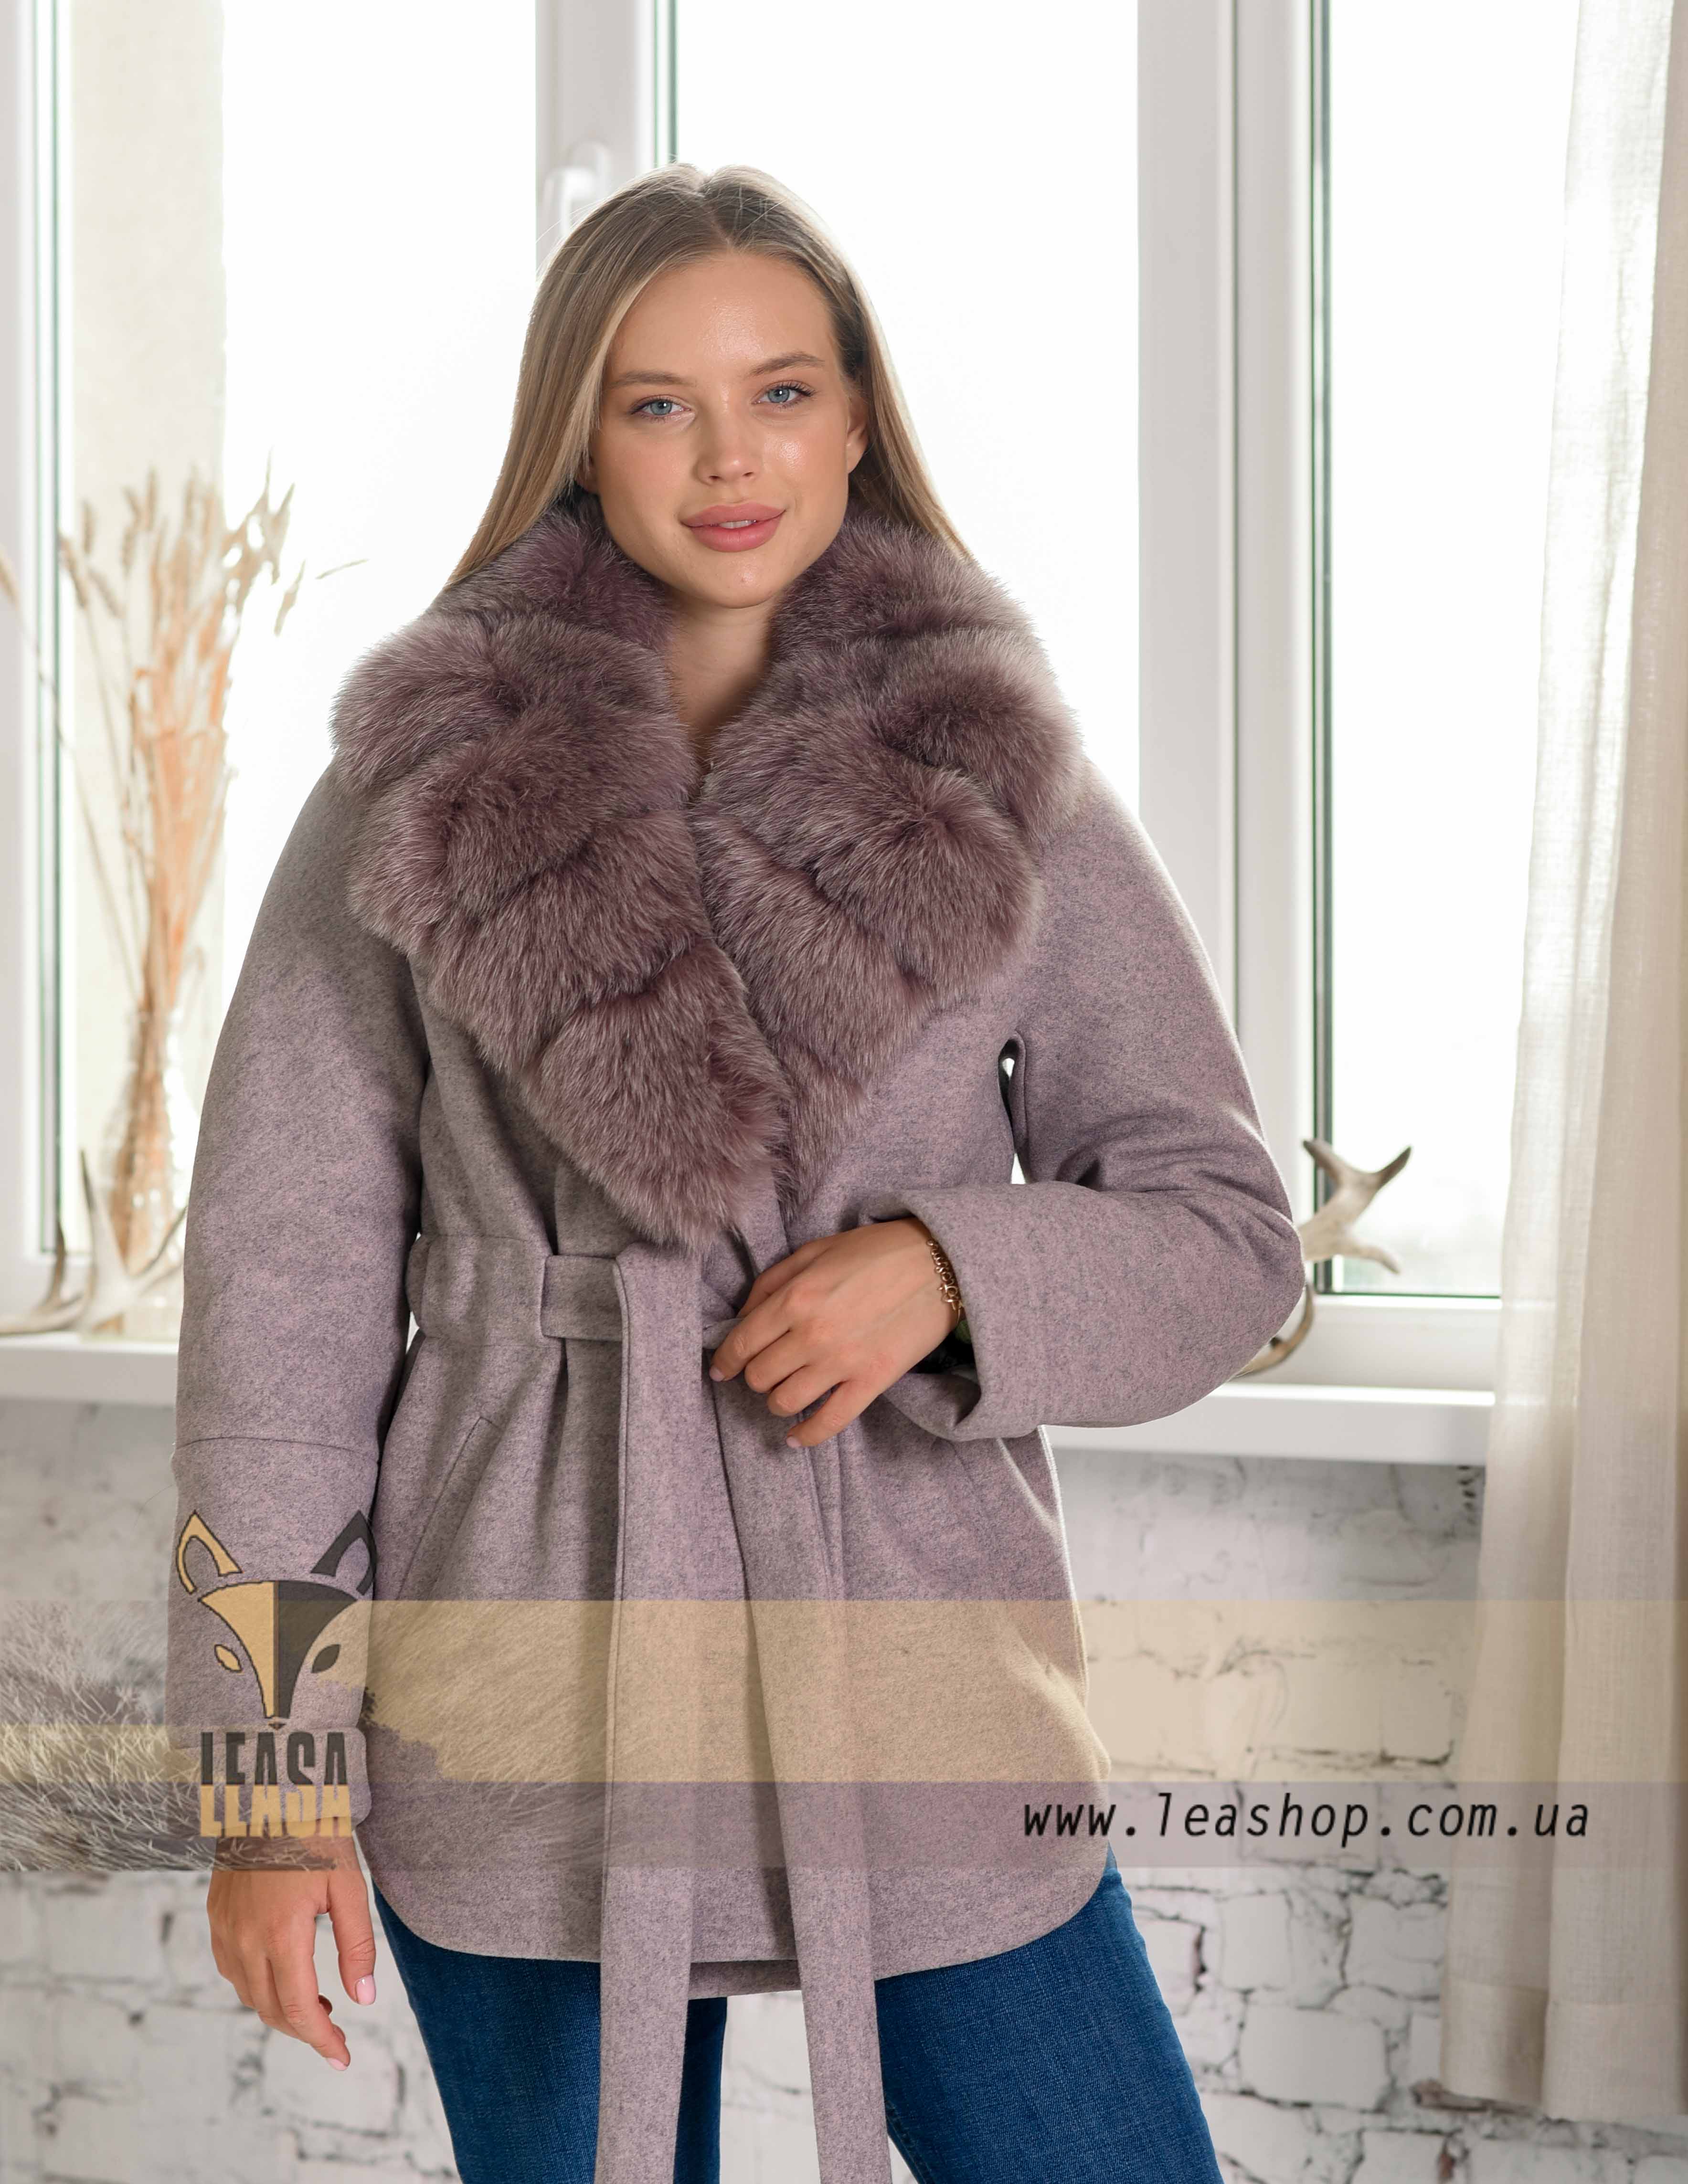 Женское пальто цвета пудра с меховым воротником